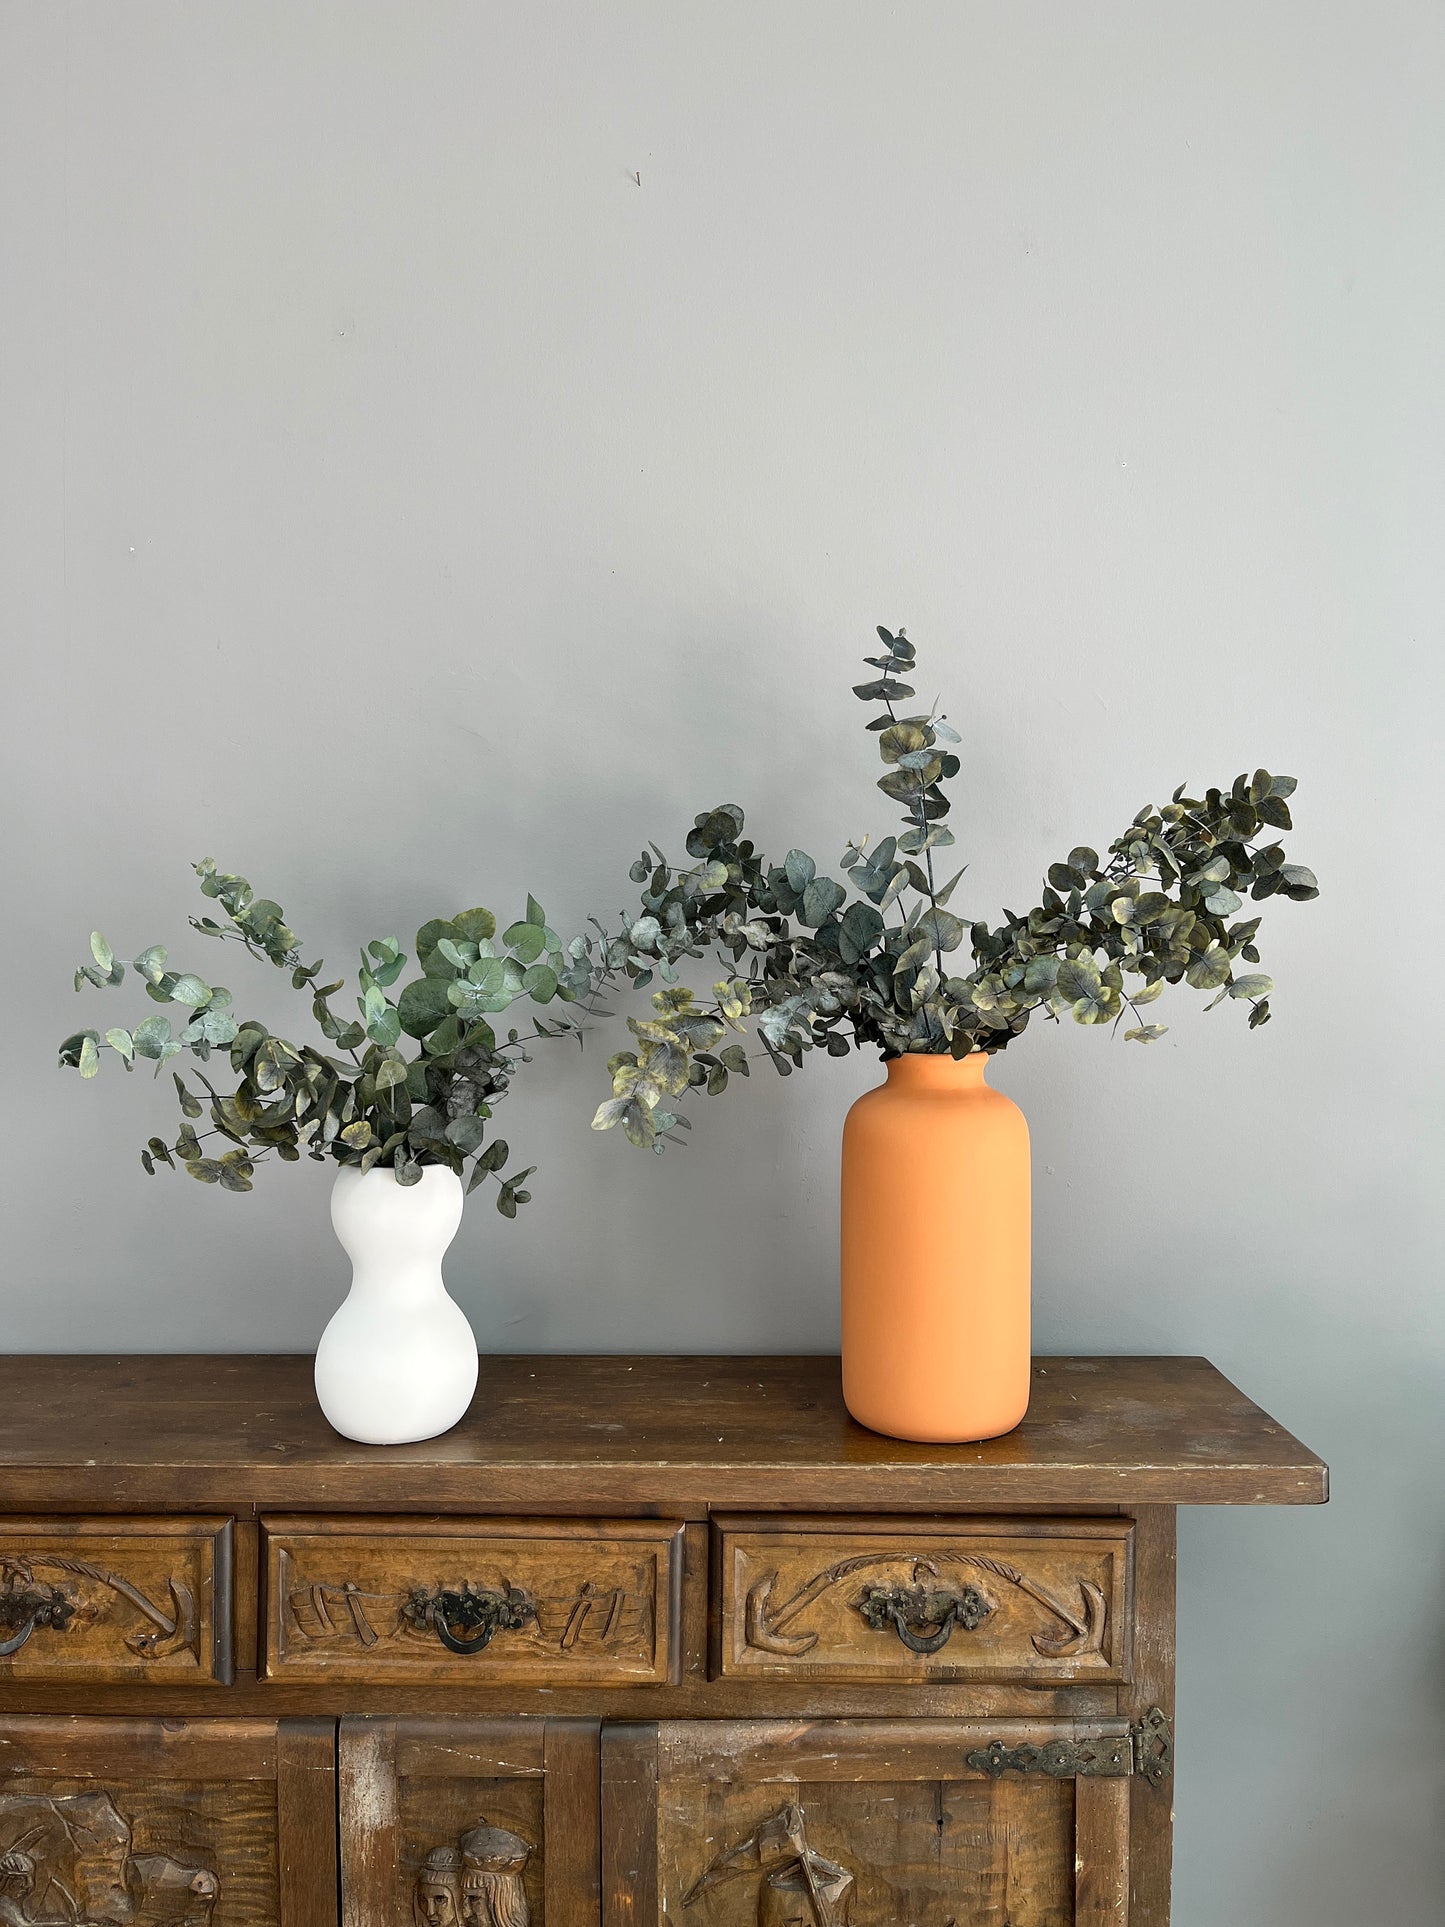 Eucalyptus in a vase, Vase arrangement, Dried flowers bouquet in a vase, Dried flowers bouquet, Boho decor, Table decor, Boho bouquet